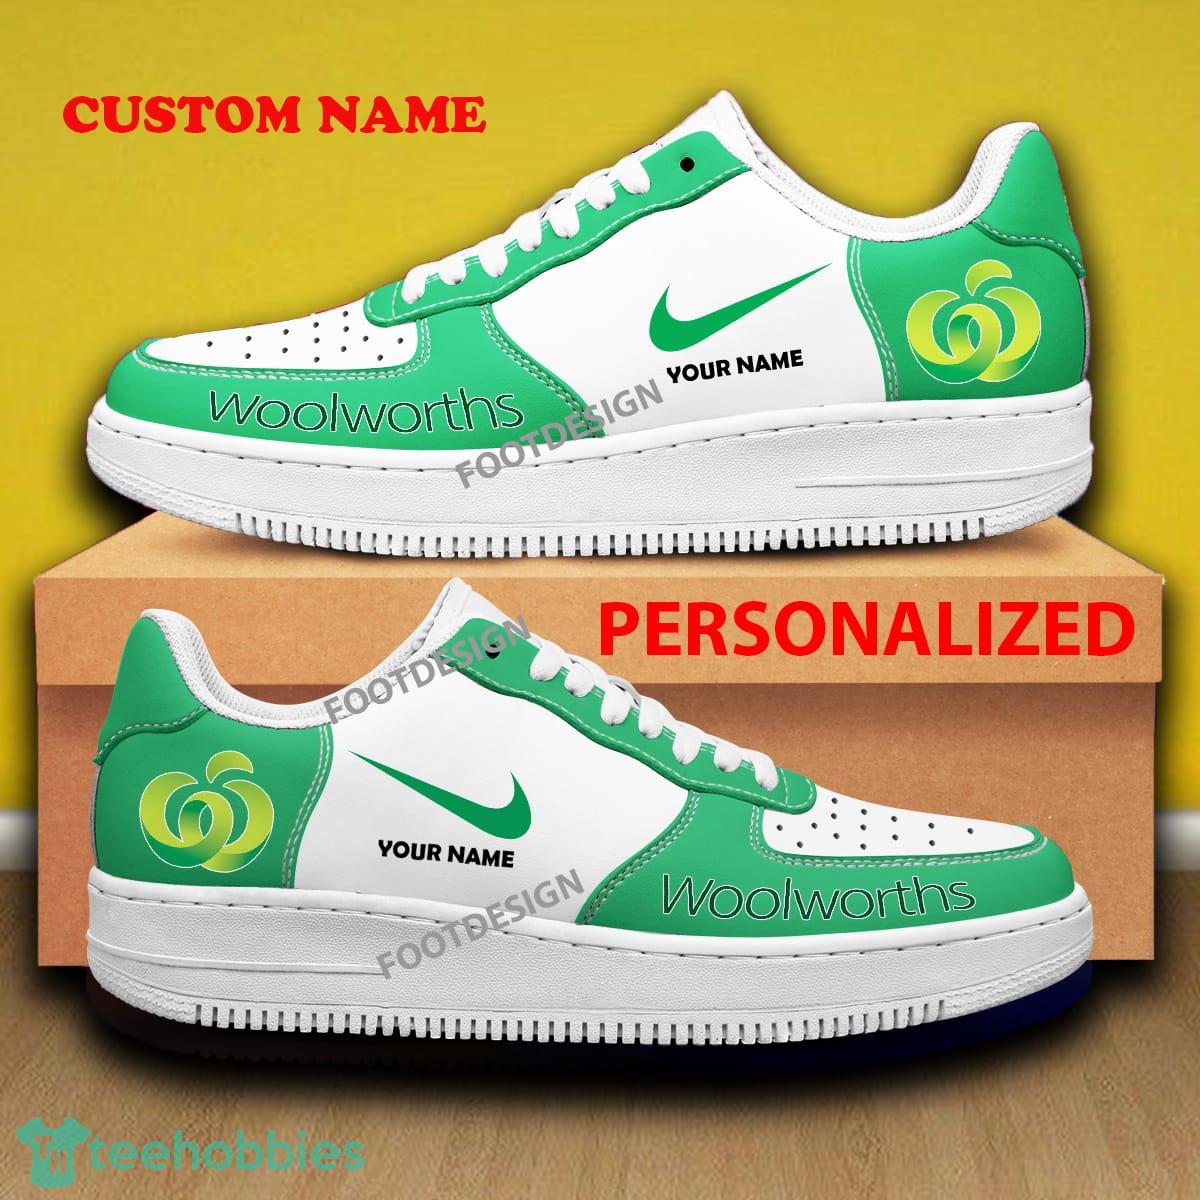 Custom Name WOOLWORTHS Air Force 1 Sneakers Brand All Over Print Gift - Custom Name WOOLWORTHS Air Force 1 Sneakers Brand All Over Print Gift